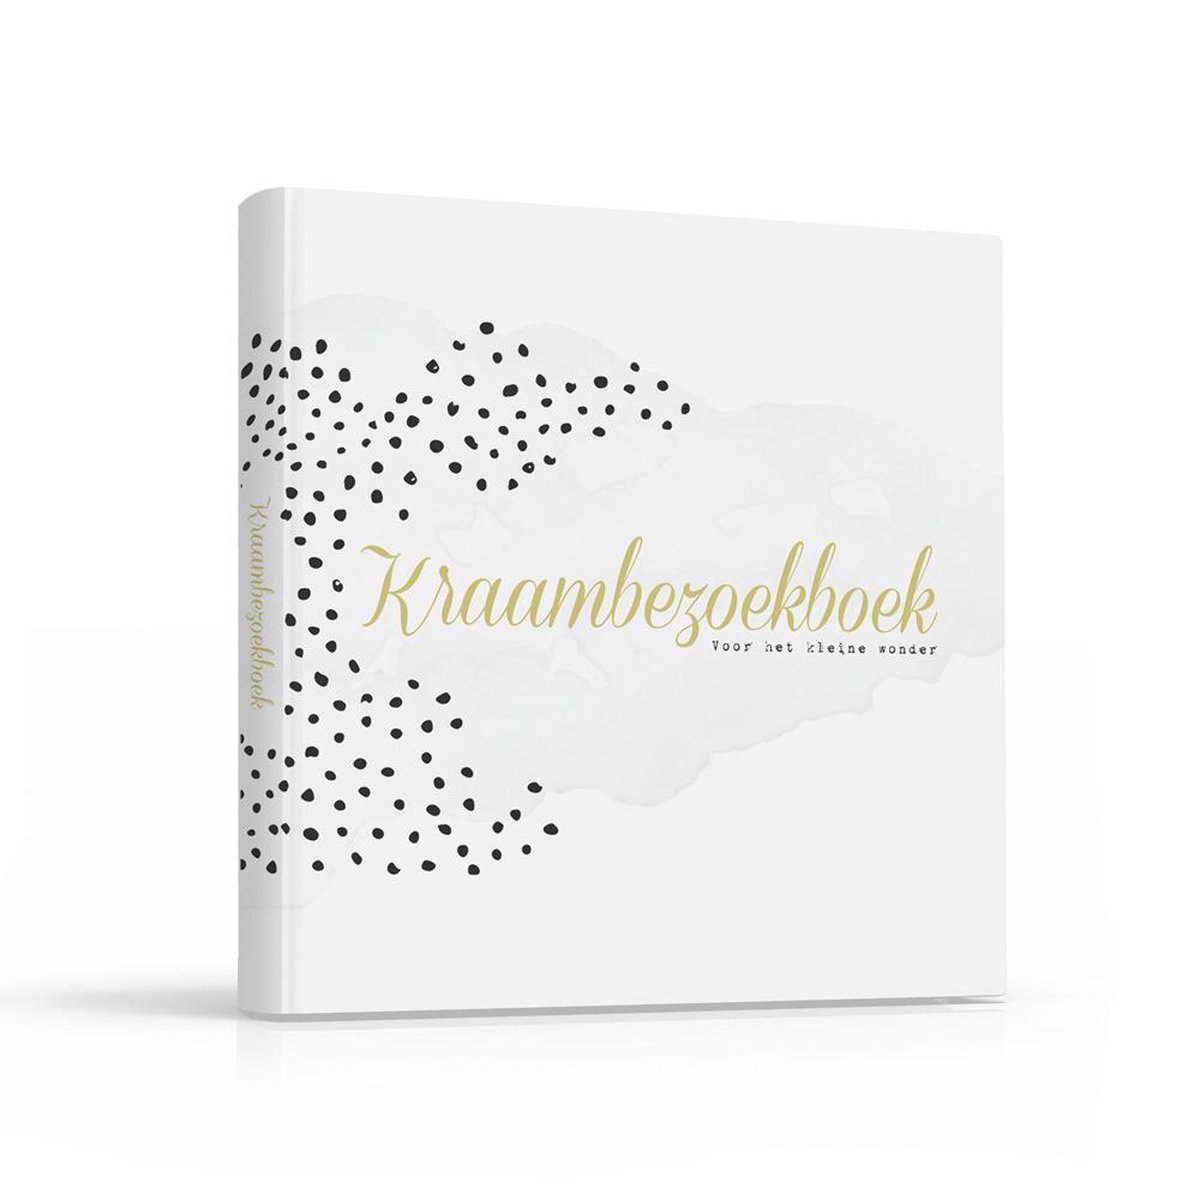 Fabrikten Kraambezoekboek - 21x21cm - Goud/Wit/Zwart